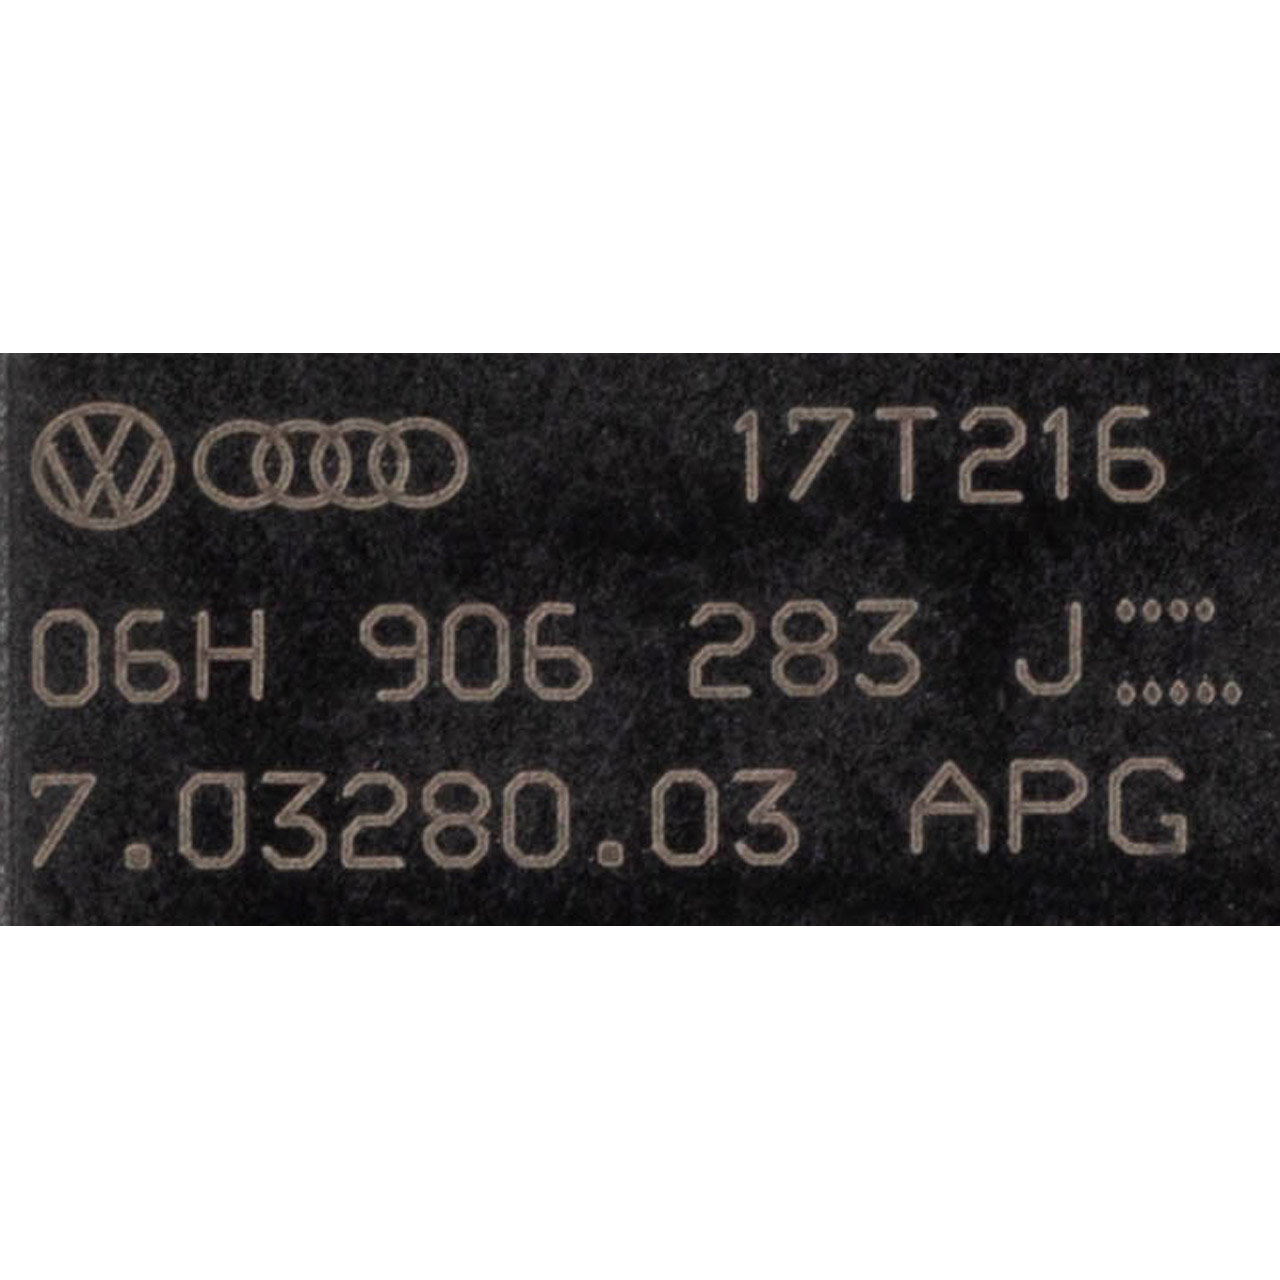 Ventil Luftsteuerung Ansaugluft für VW Golf 7 GTI/R AUDI A4 SEAT SKODA 2.0 TFSI 06H906283J